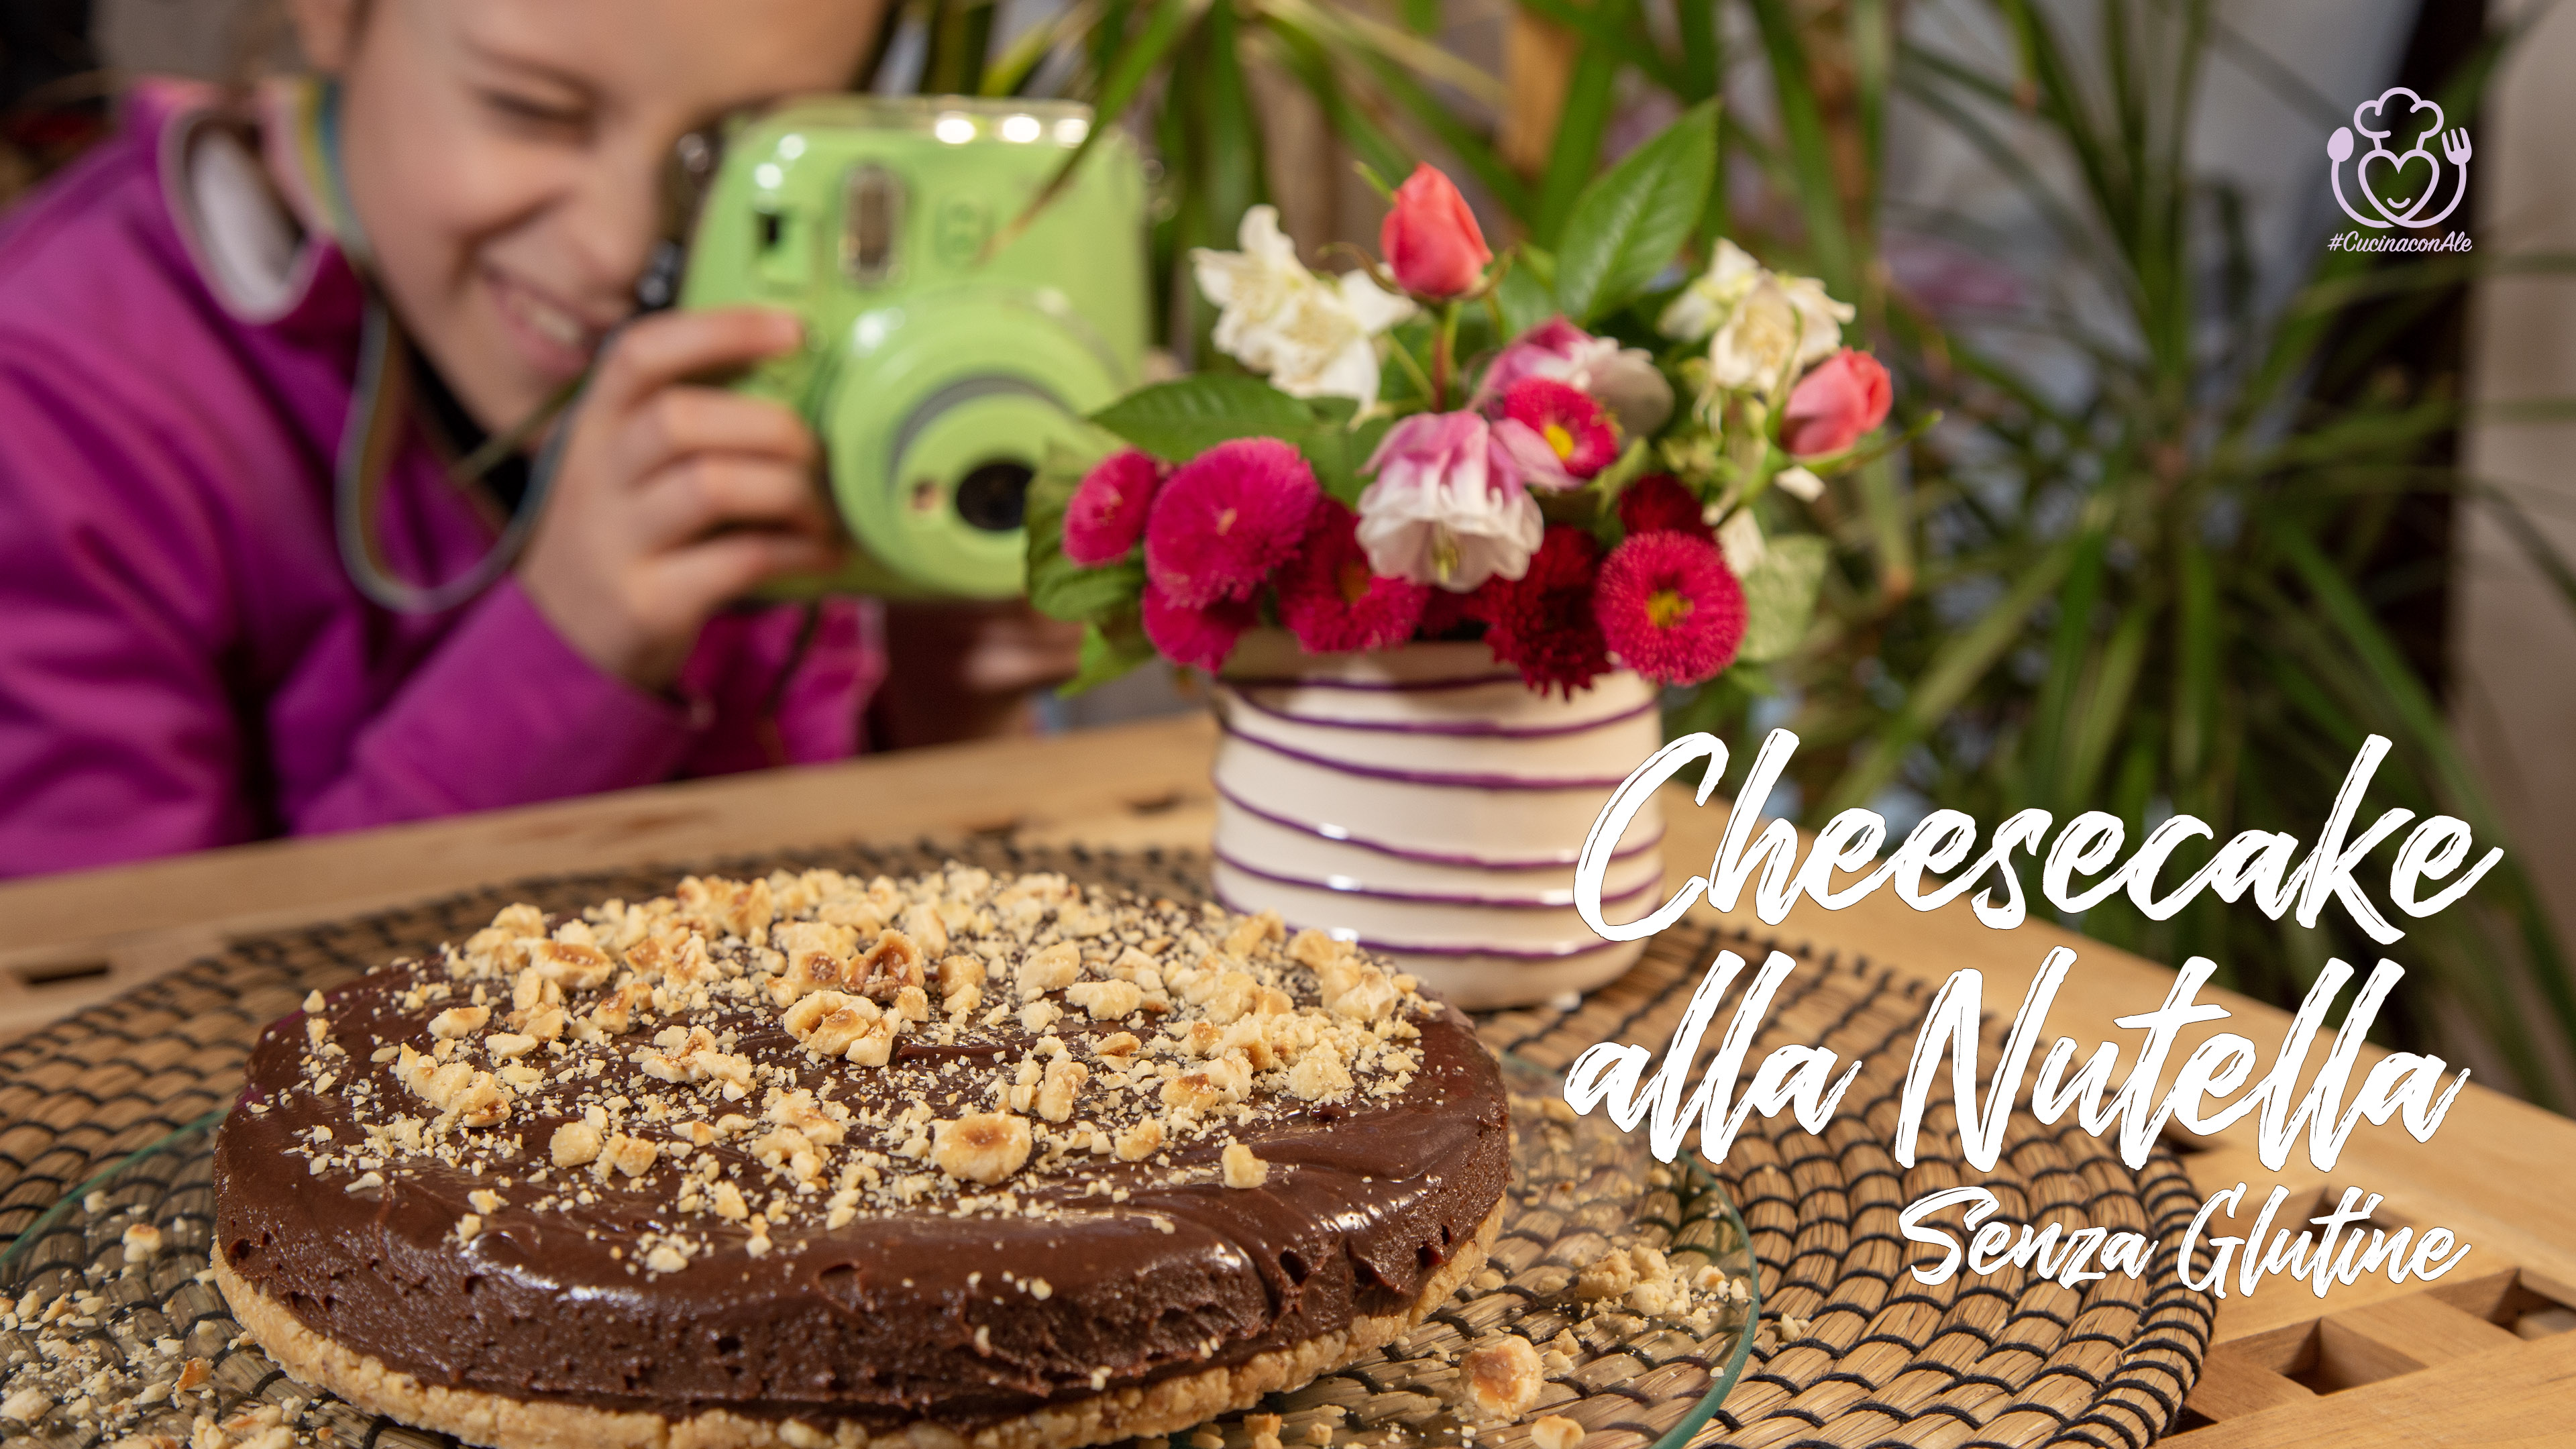 Cheesecake Alla Nutella Senza Glutine Semplice E Veloce Con 5 Ingredienti Pronta In 15 Minuti Sporcando Solo Una Ciotola Ricette Di Cucina